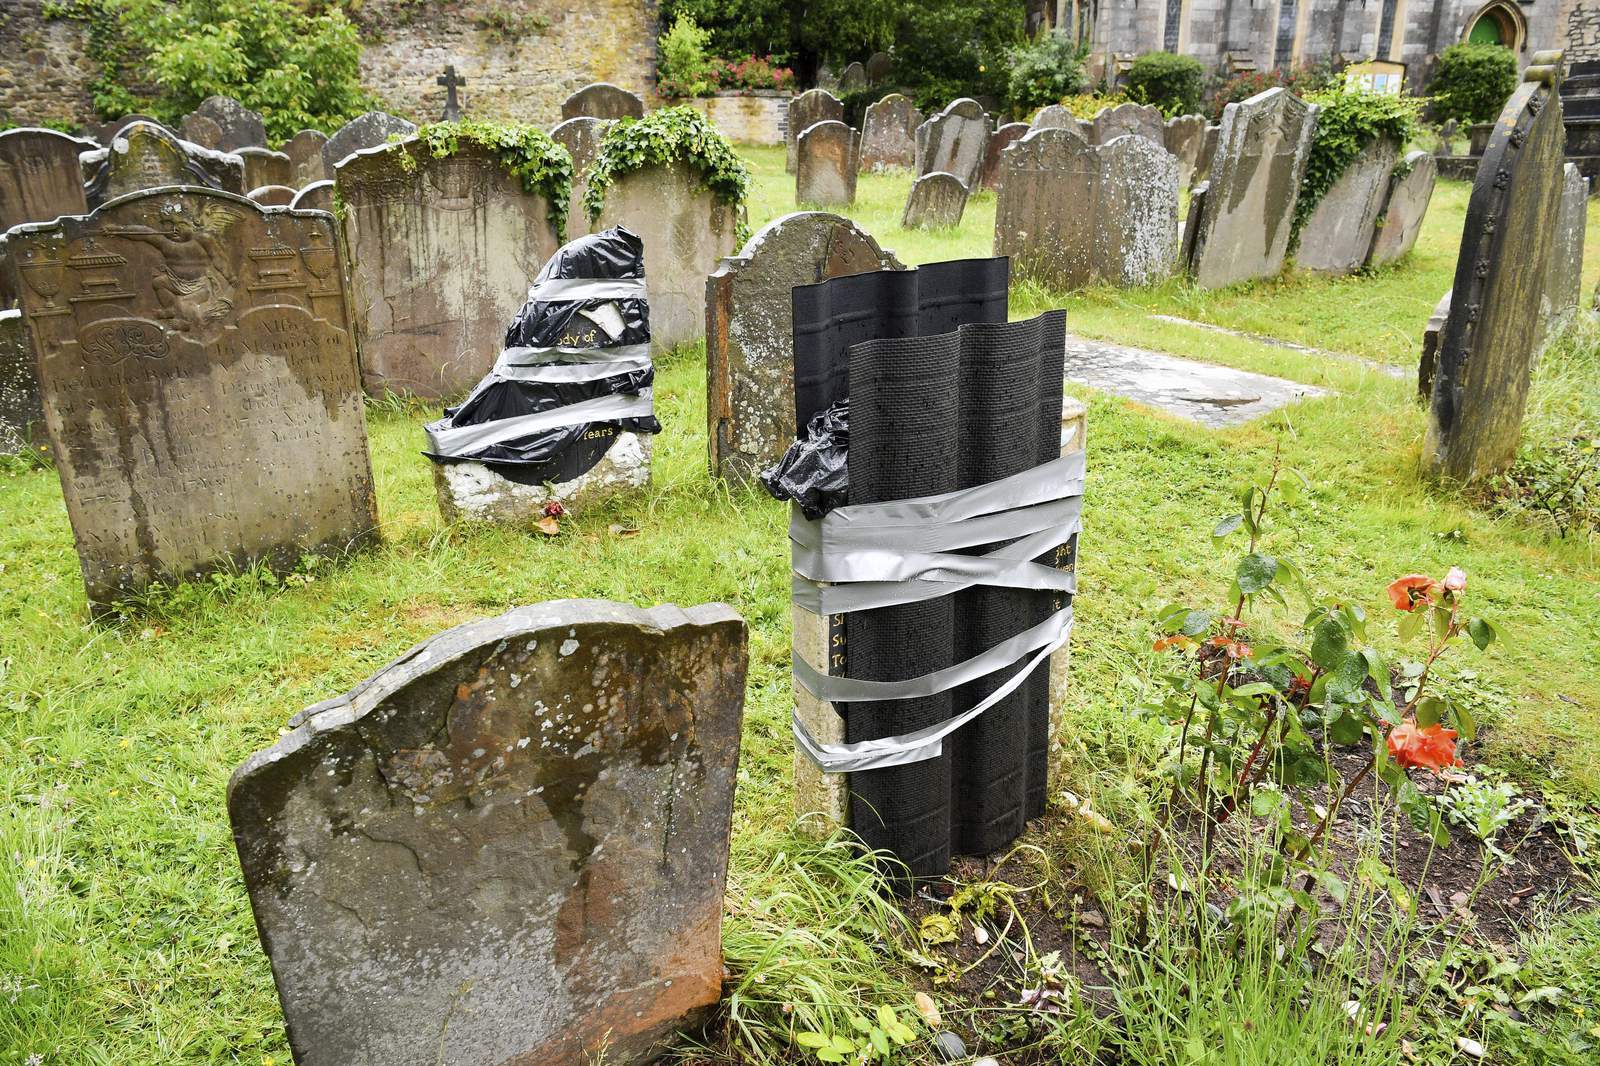 Slave's grave vandalized in UK city in apparent retaliation